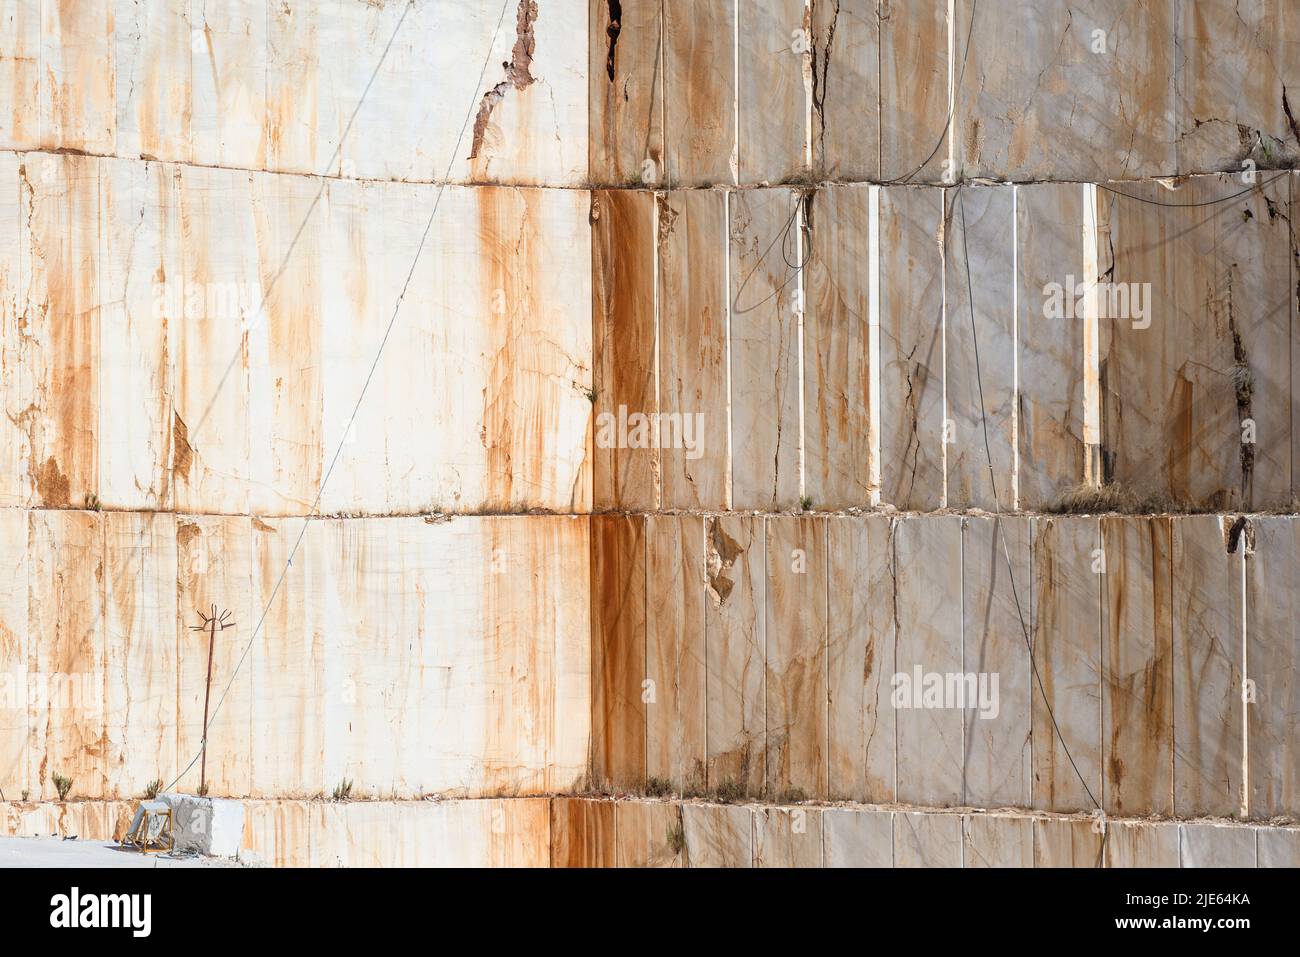 Cara de roca con los bordes cortados de los bloques de piedra en una cantera de mármol cerca de Orosei en la costa este de Cerdeña, Baronia, Italia Foto de stock